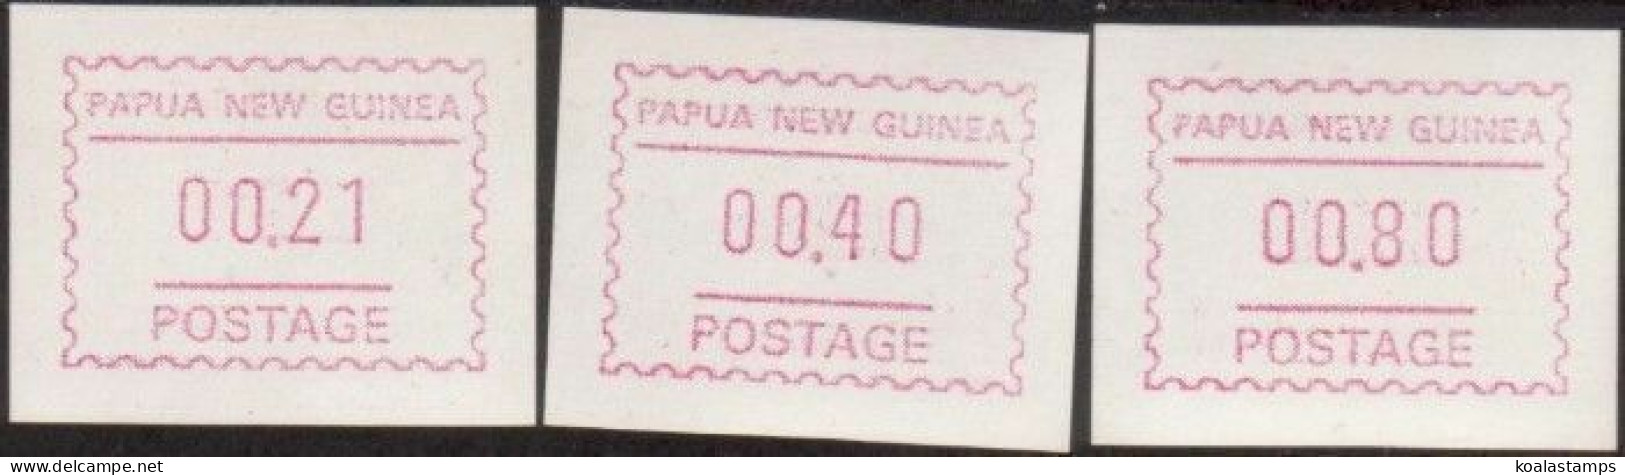 Papua New Guinea 1991 SG631f Framas Set MNH - Papoea-Nieuw-Guinea